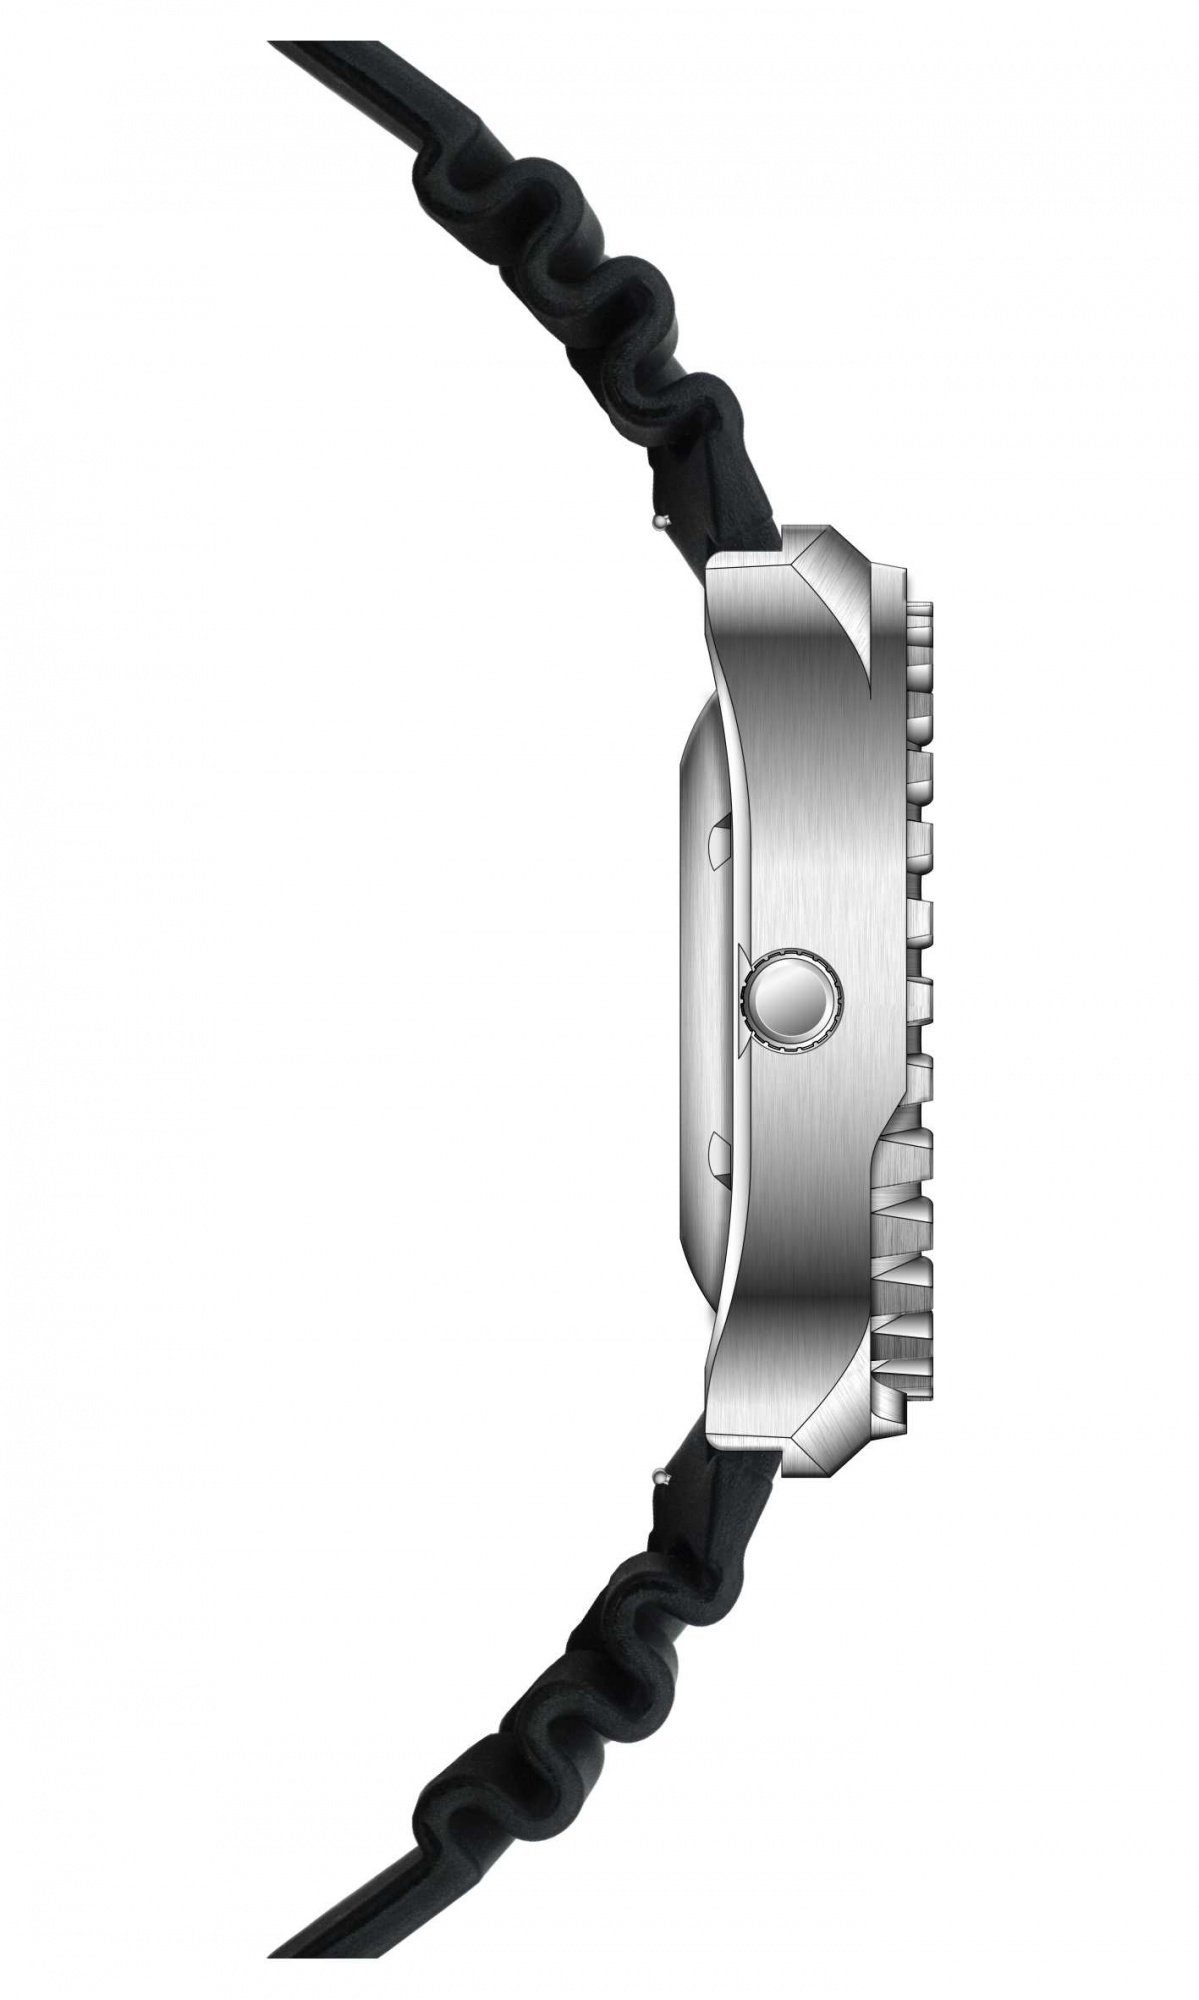 Heliumventil mm, Quarzuhr Riedenschild Army mit Silikonband Watch RS9000-05 100ATM 46 Taucheruhr Schwarz